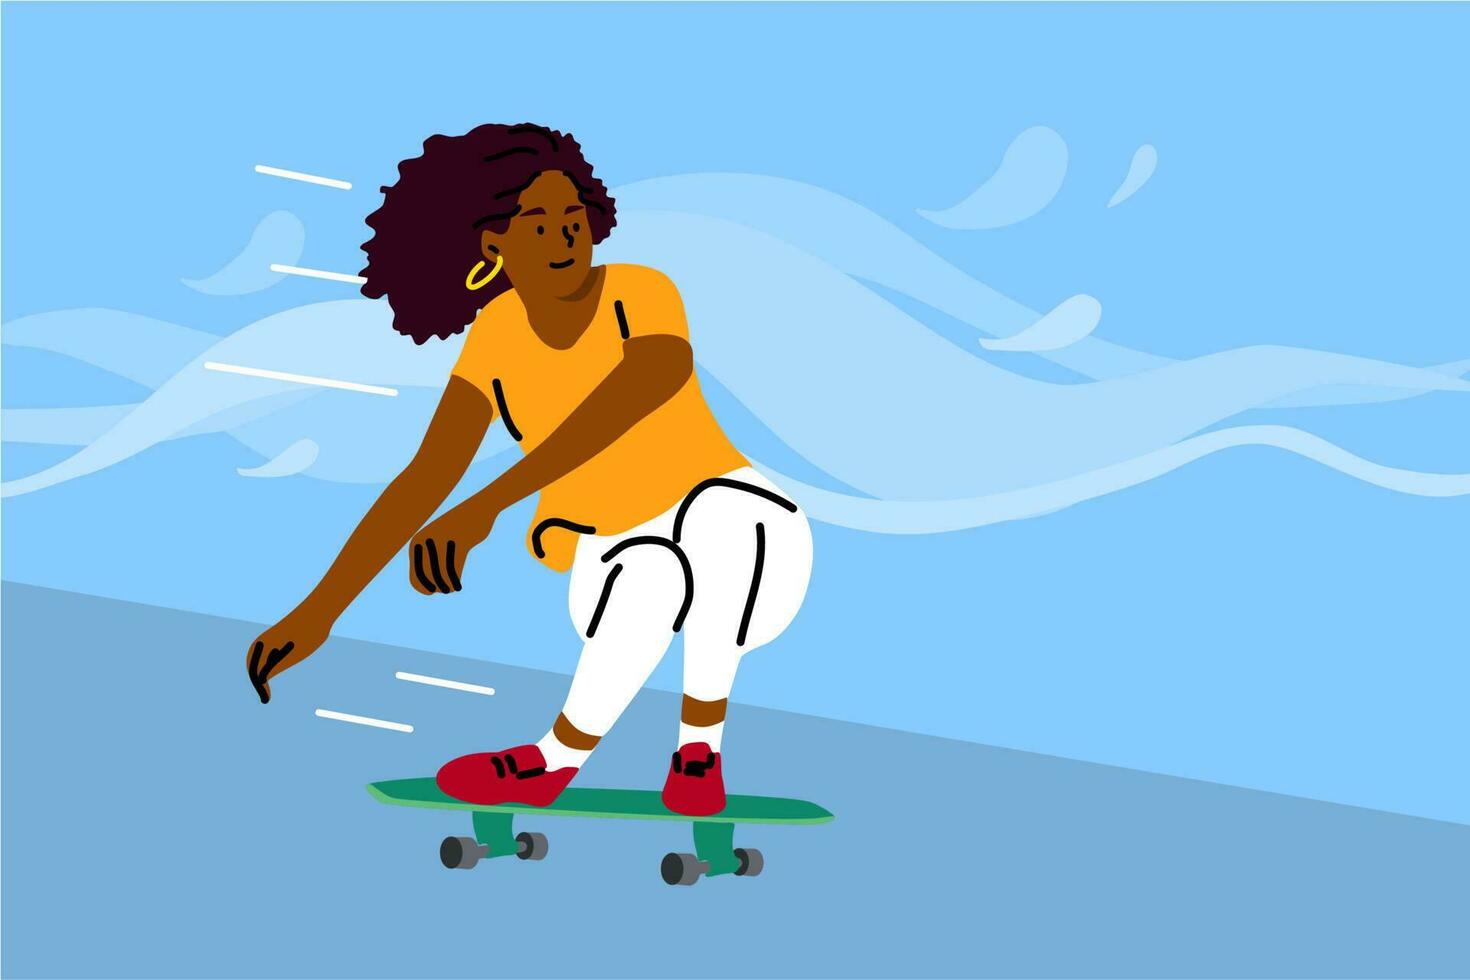 skateboarden, sport, recreatie, zomertijd concept. jong Afrikaanse Amerikaans vrouw meisje tiener atleet karakter rijden skateboard en het uitvoeren van trucs. actief zomer extreem levensstijl illustratie vector